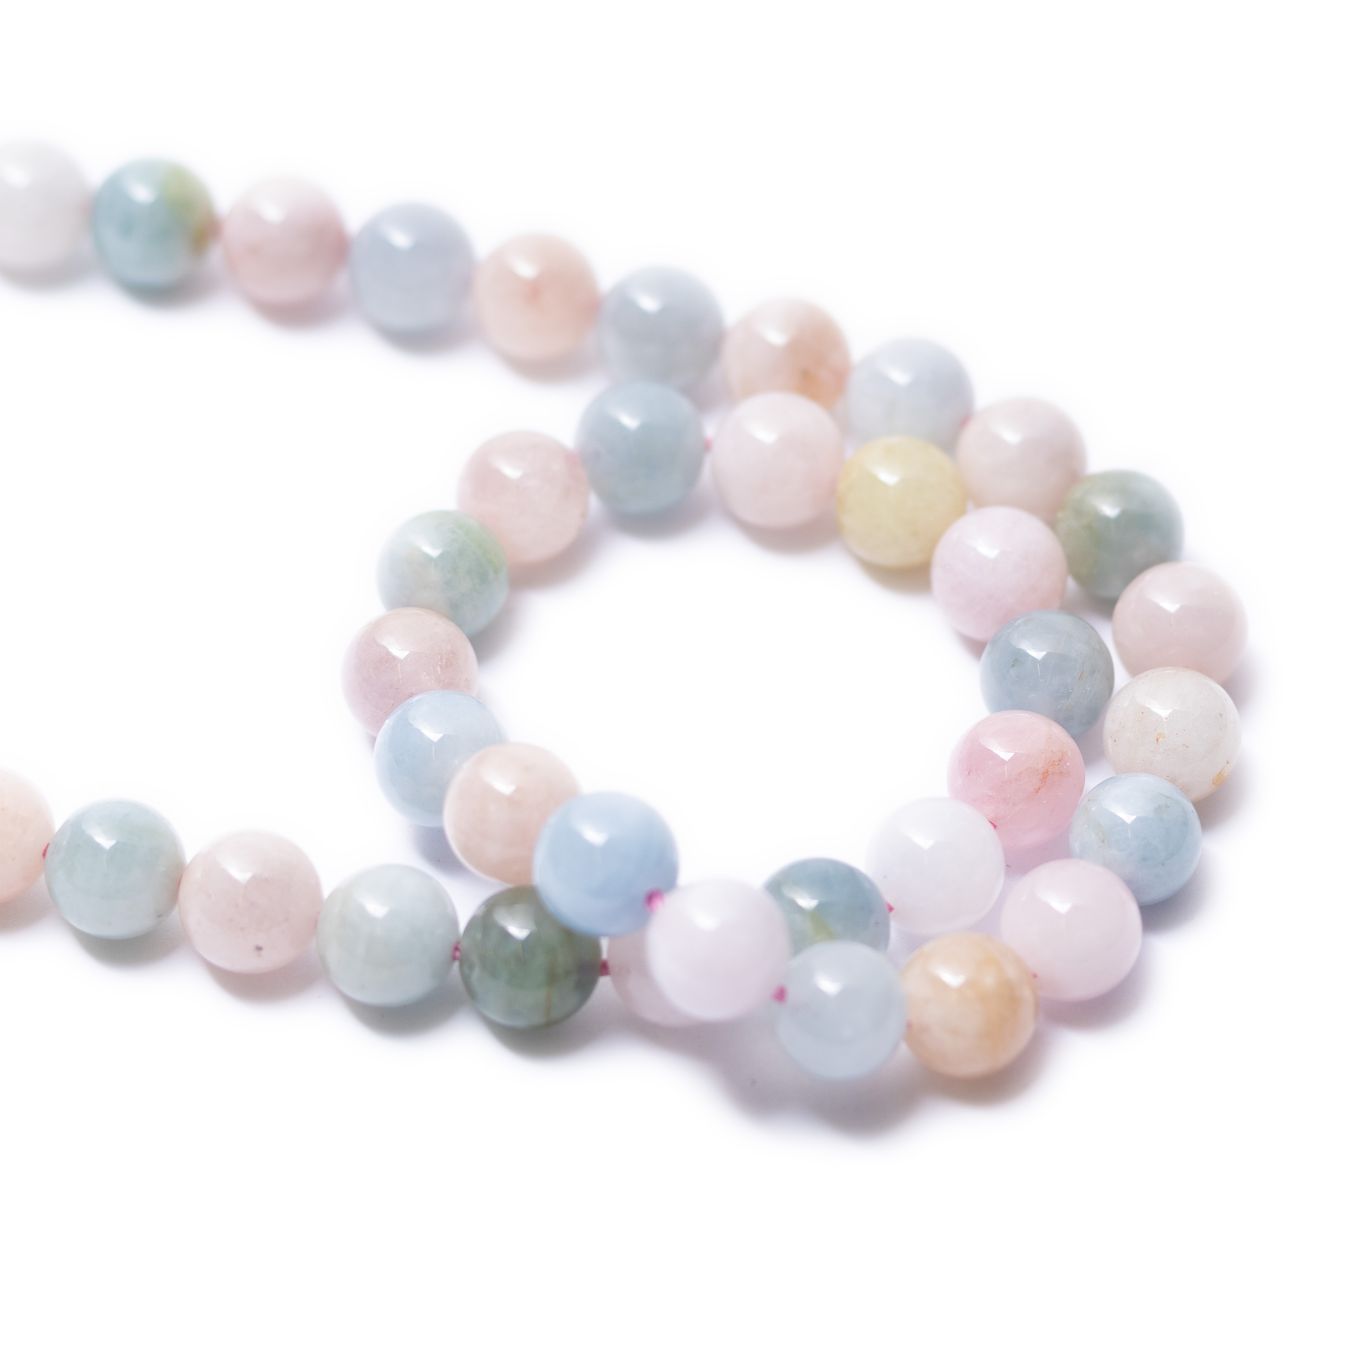 Morganite And Aquamarine Round Beads - Various sizes